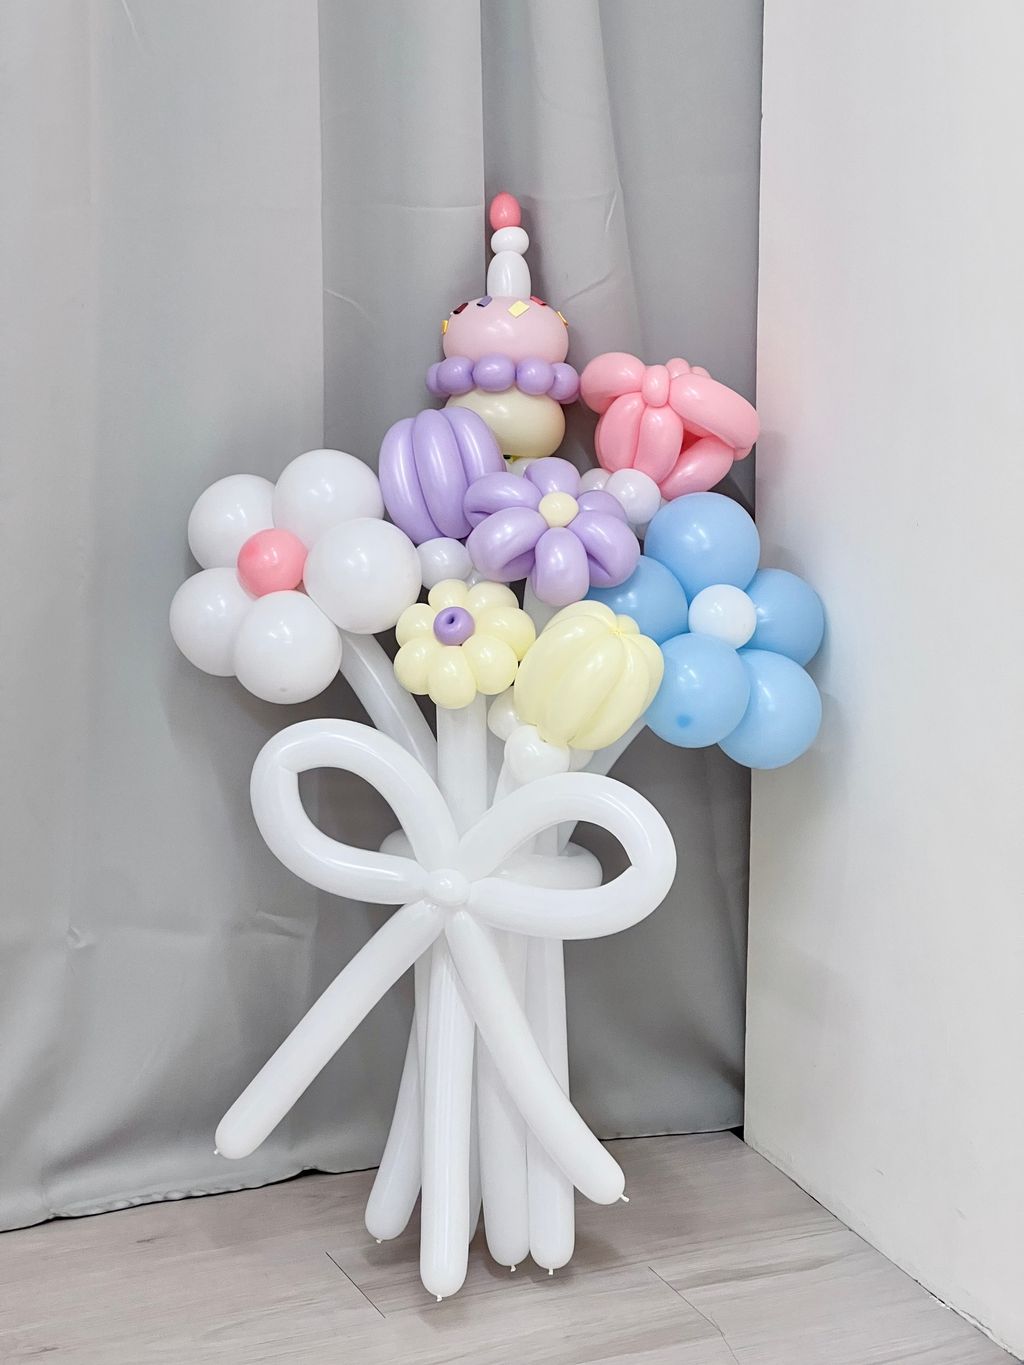 生日祝賀 氣球花束 台北 首選